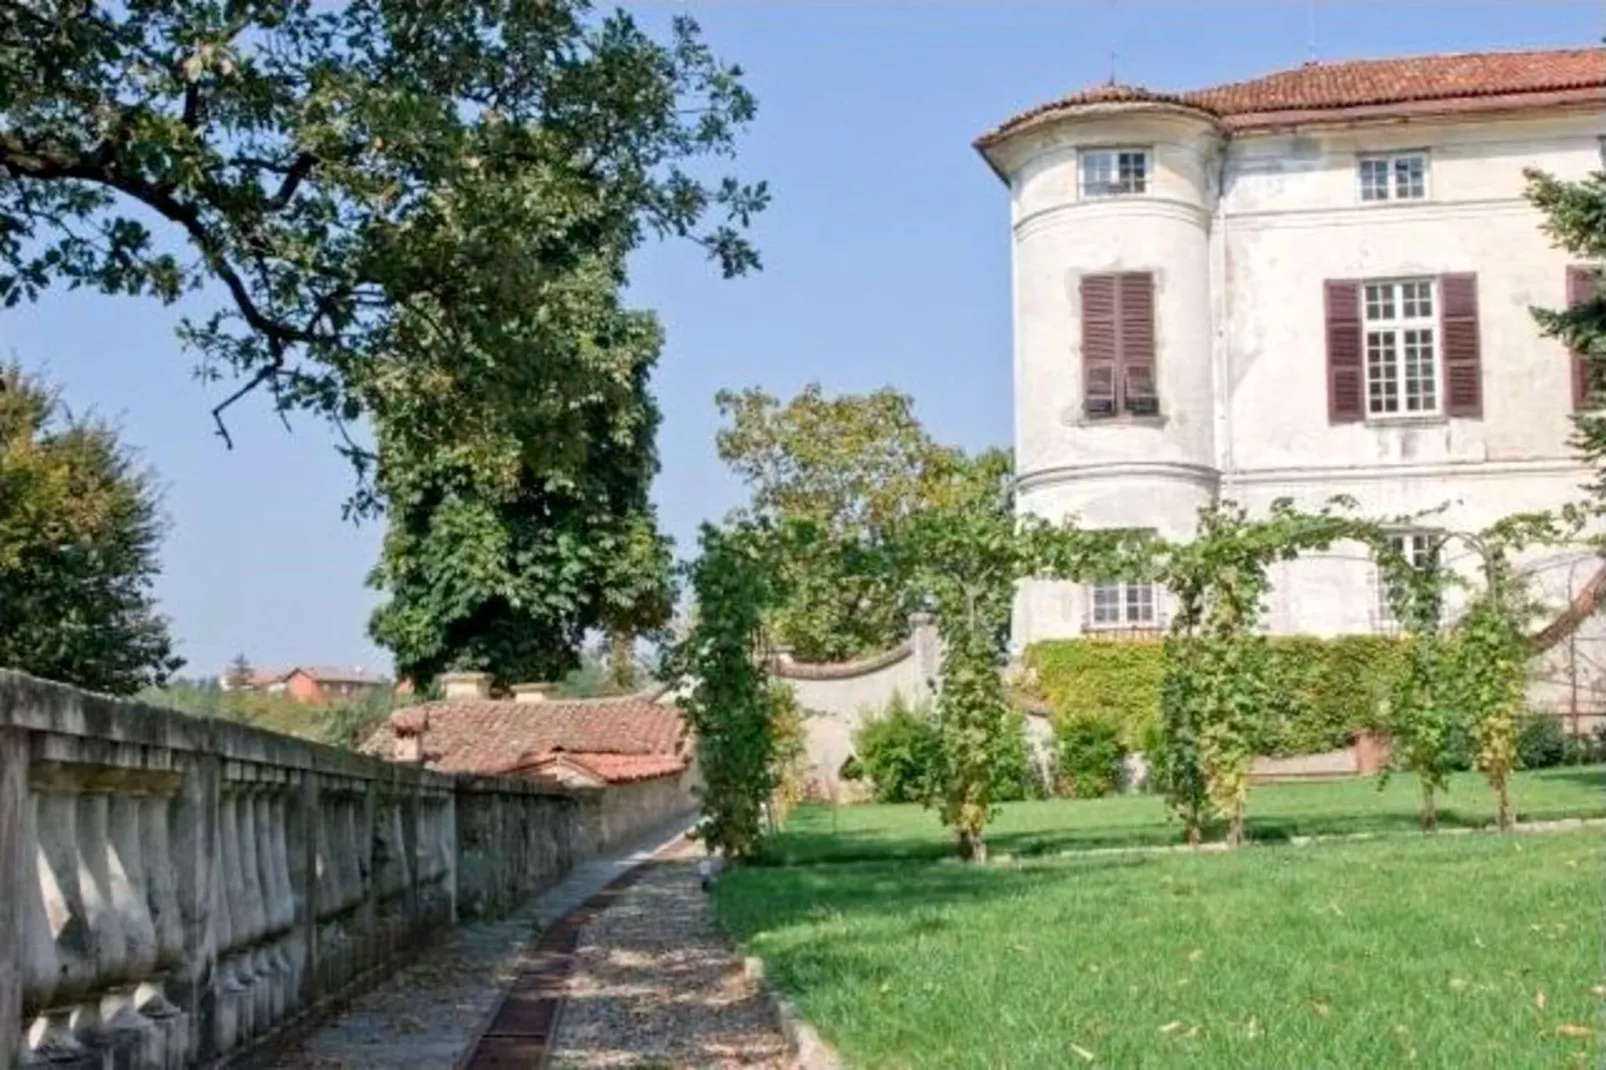 Castello Grimalda - Conchiglie-Tuinen zomer